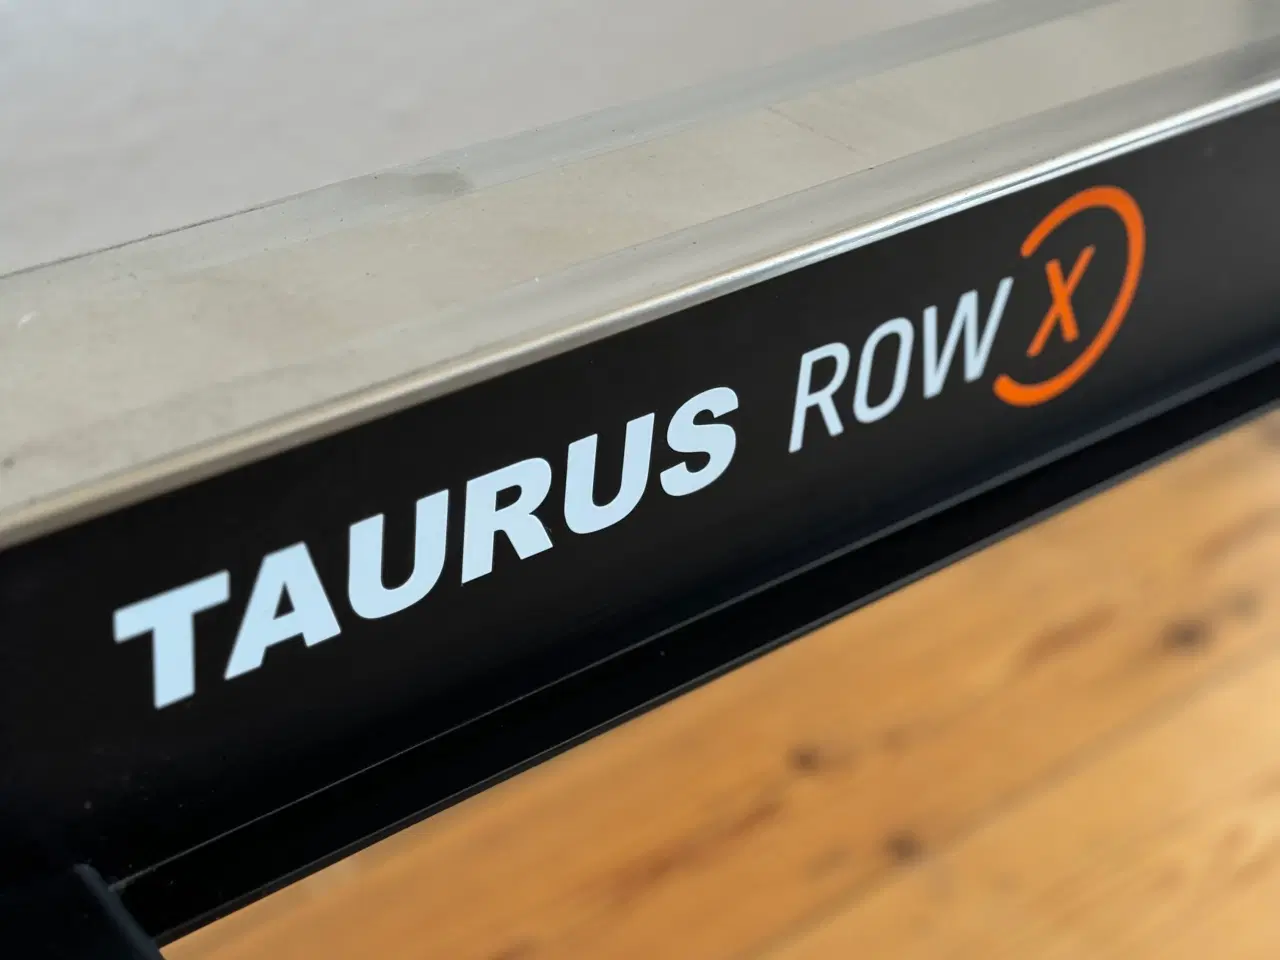 Billede 4 - Brugt Taurus Row X Romaskine – Fremragende Stand